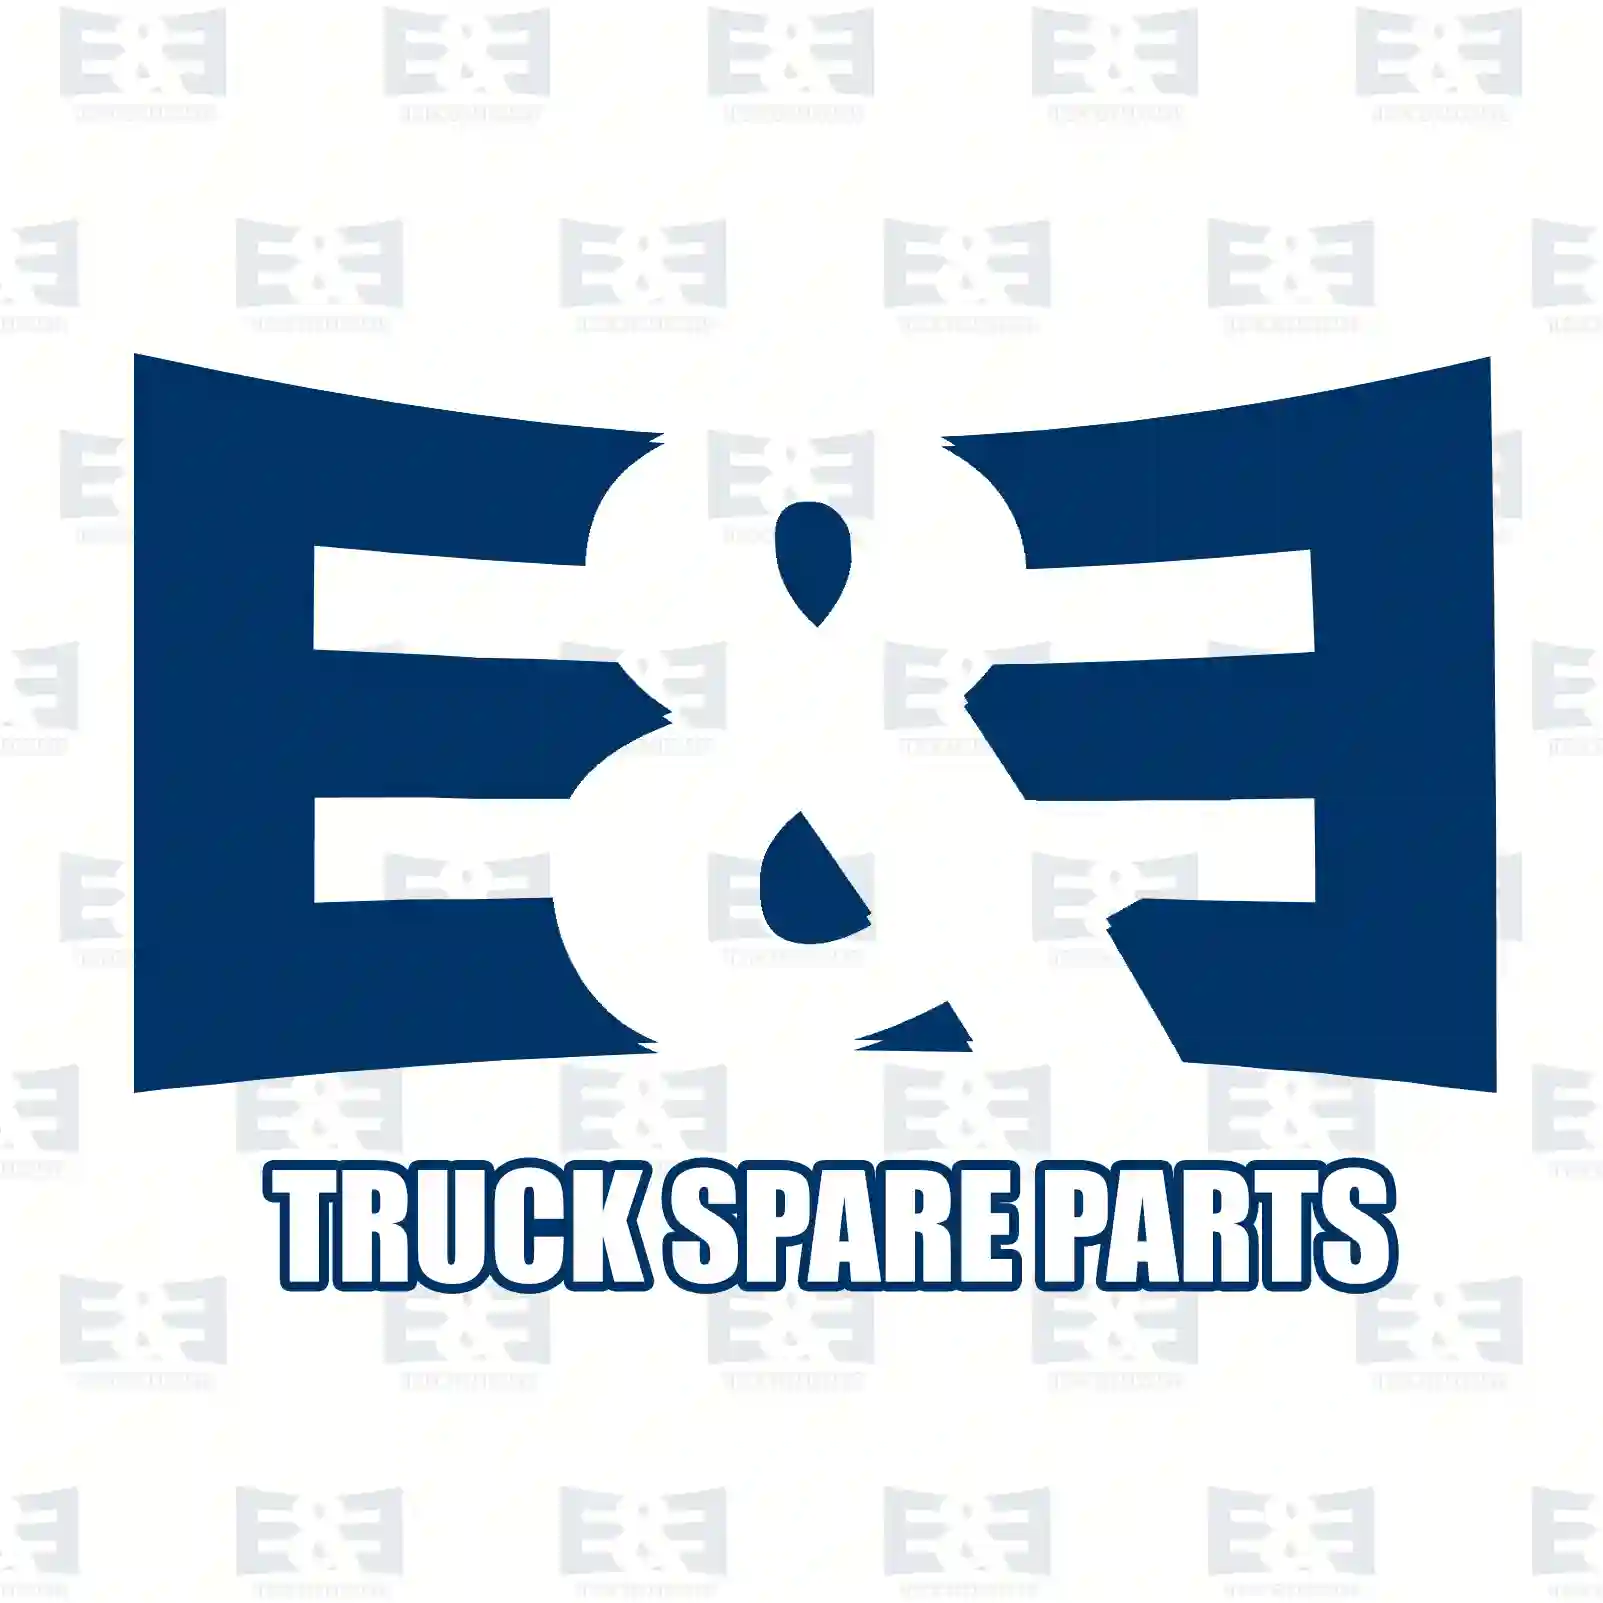 Distributing pressure pipe, 2E2286732, 504088073 ||  2E2286732 E&E Truck Spare Parts | Truck Spare Parts, Auotomotive Spare Parts Distributing pressure pipe, 2E2286732, 504088073 ||  2E2286732 E&E Truck Spare Parts | Truck Spare Parts, Auotomotive Spare Parts